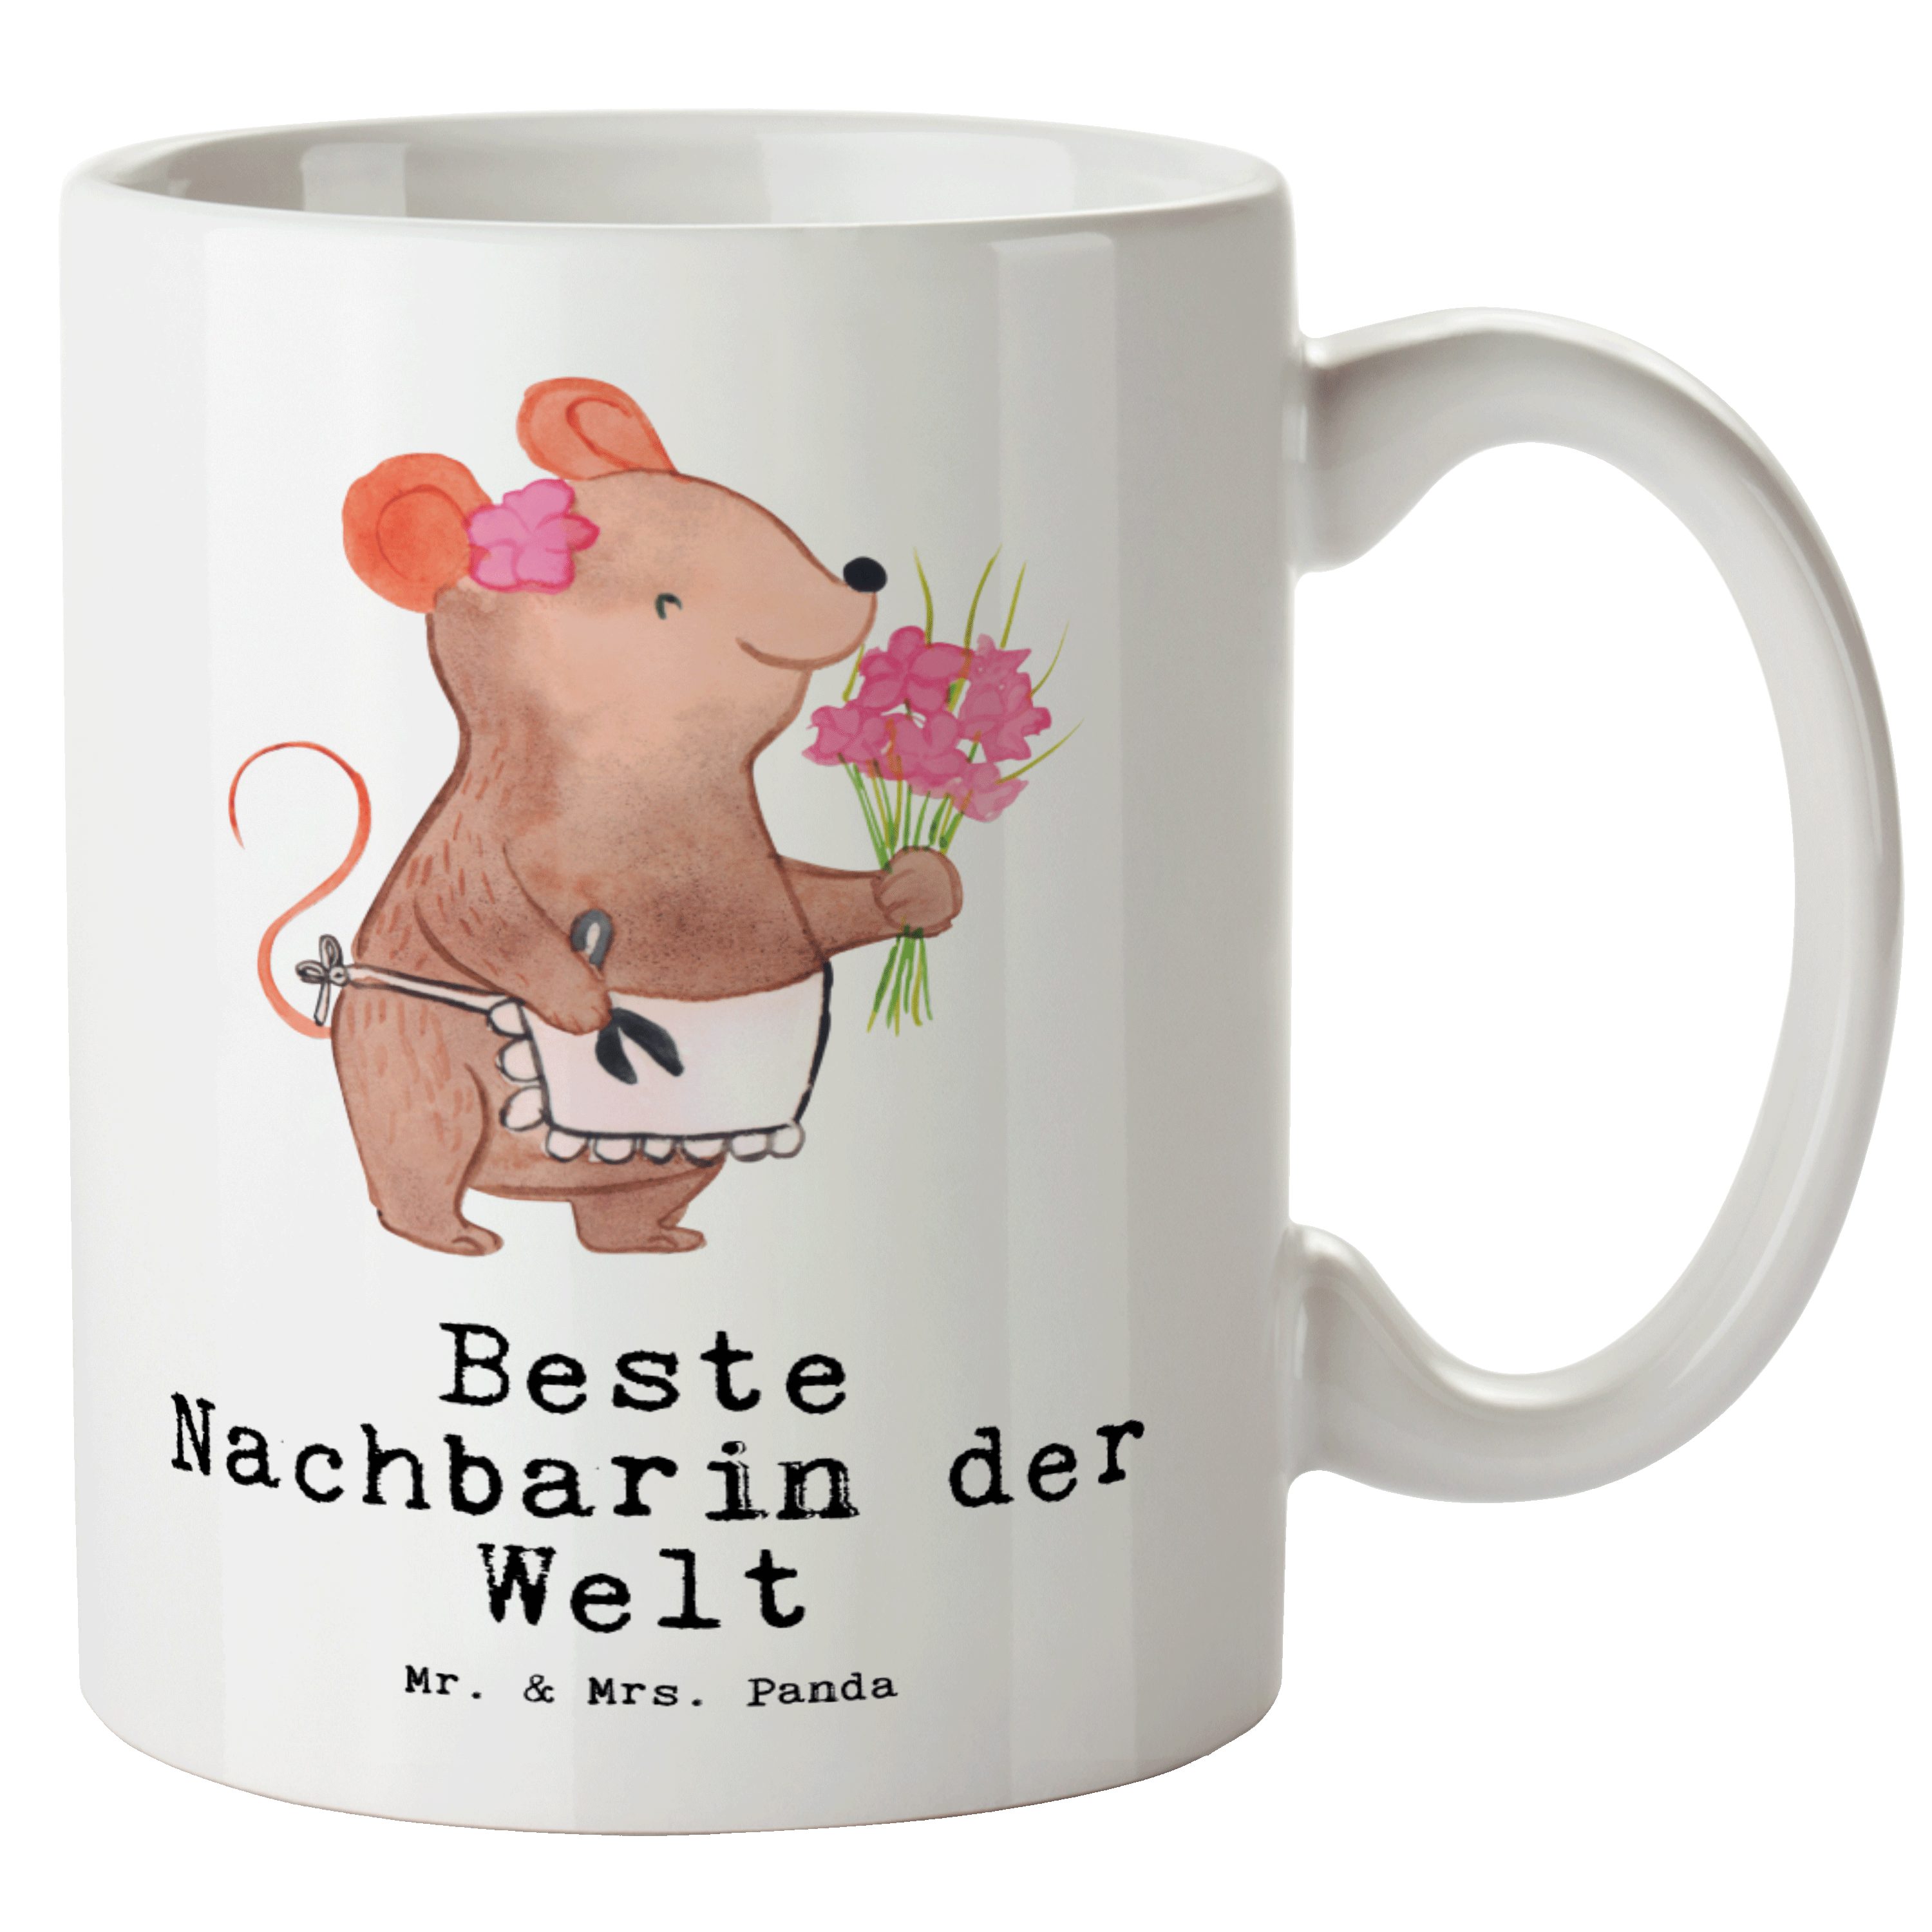 Mr. & Mrs. Panda Tasse Maus Beste Nachbarin der Welt - Weiß - Geschenk, Freude machen, Nachb, XL Tasse Keramik